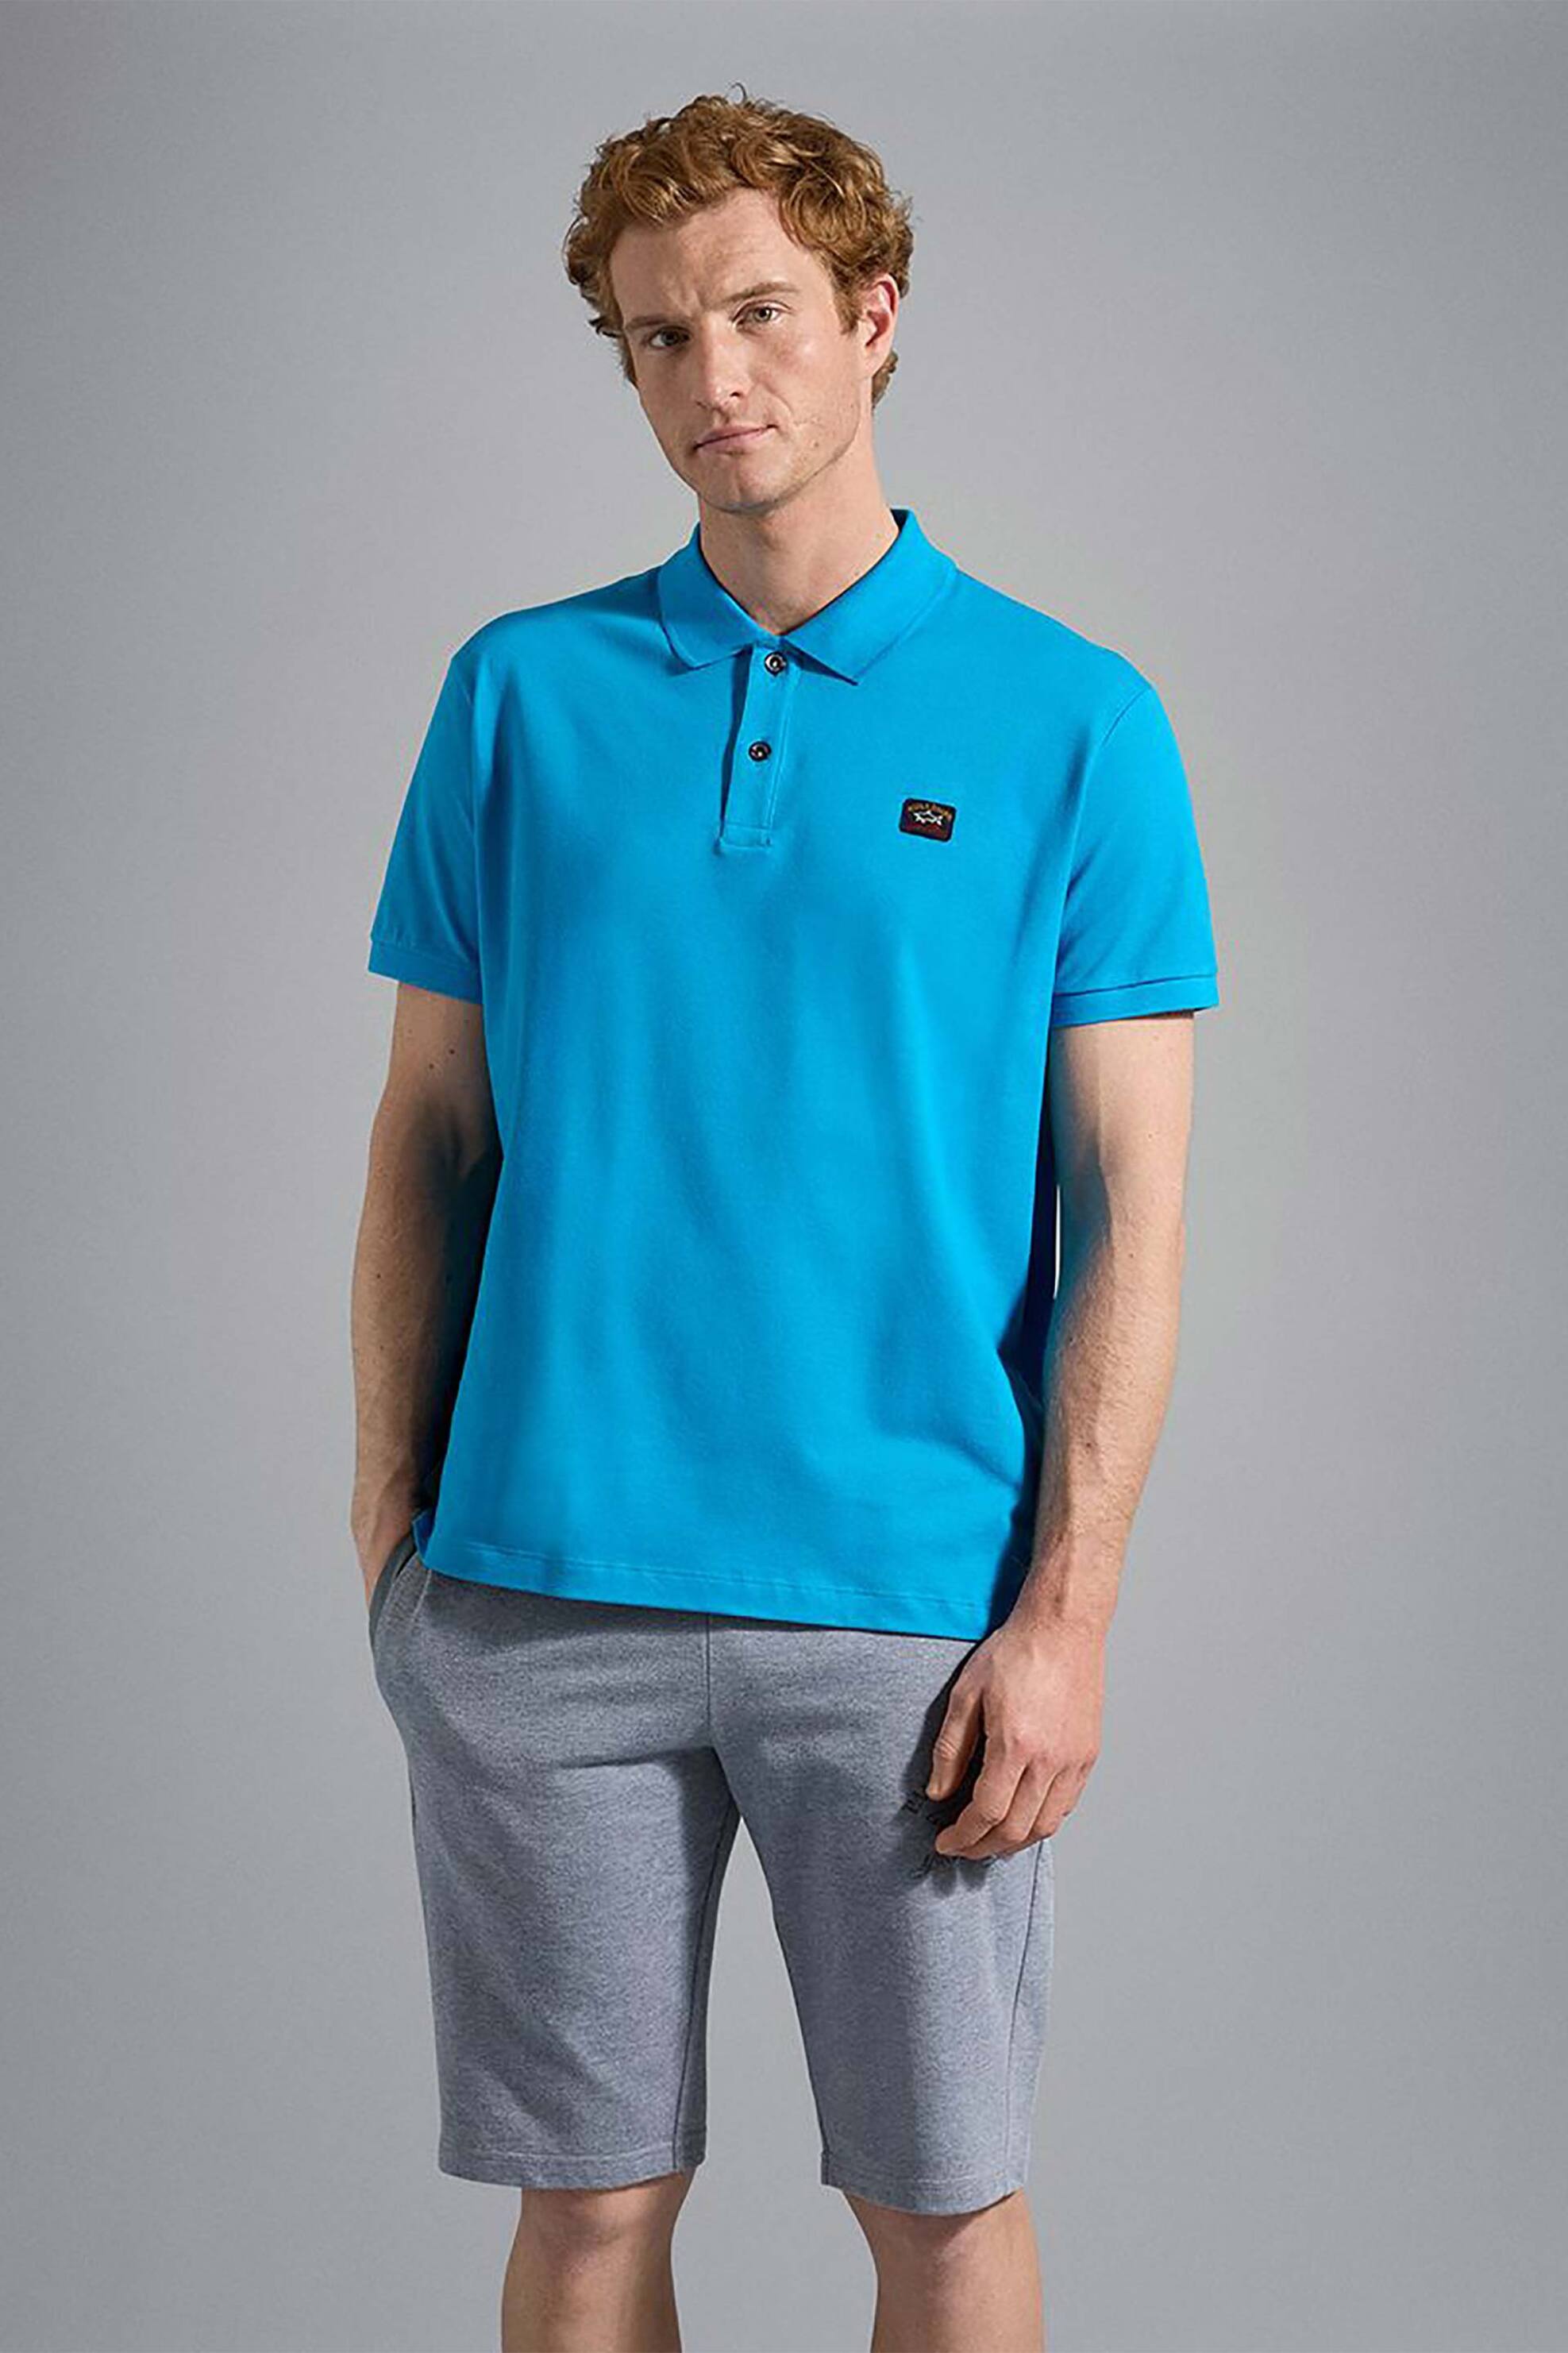 Ανδρική Μόδα > Ανδρικά Ρούχα > Ανδρικές Μπλούζες > Ανδρικές Μπλούζες Πολο Paul&Shark ανδρική πόλο μπλούζα με logo patch Relaxed Fit - C0P1070 Γαλάζιο